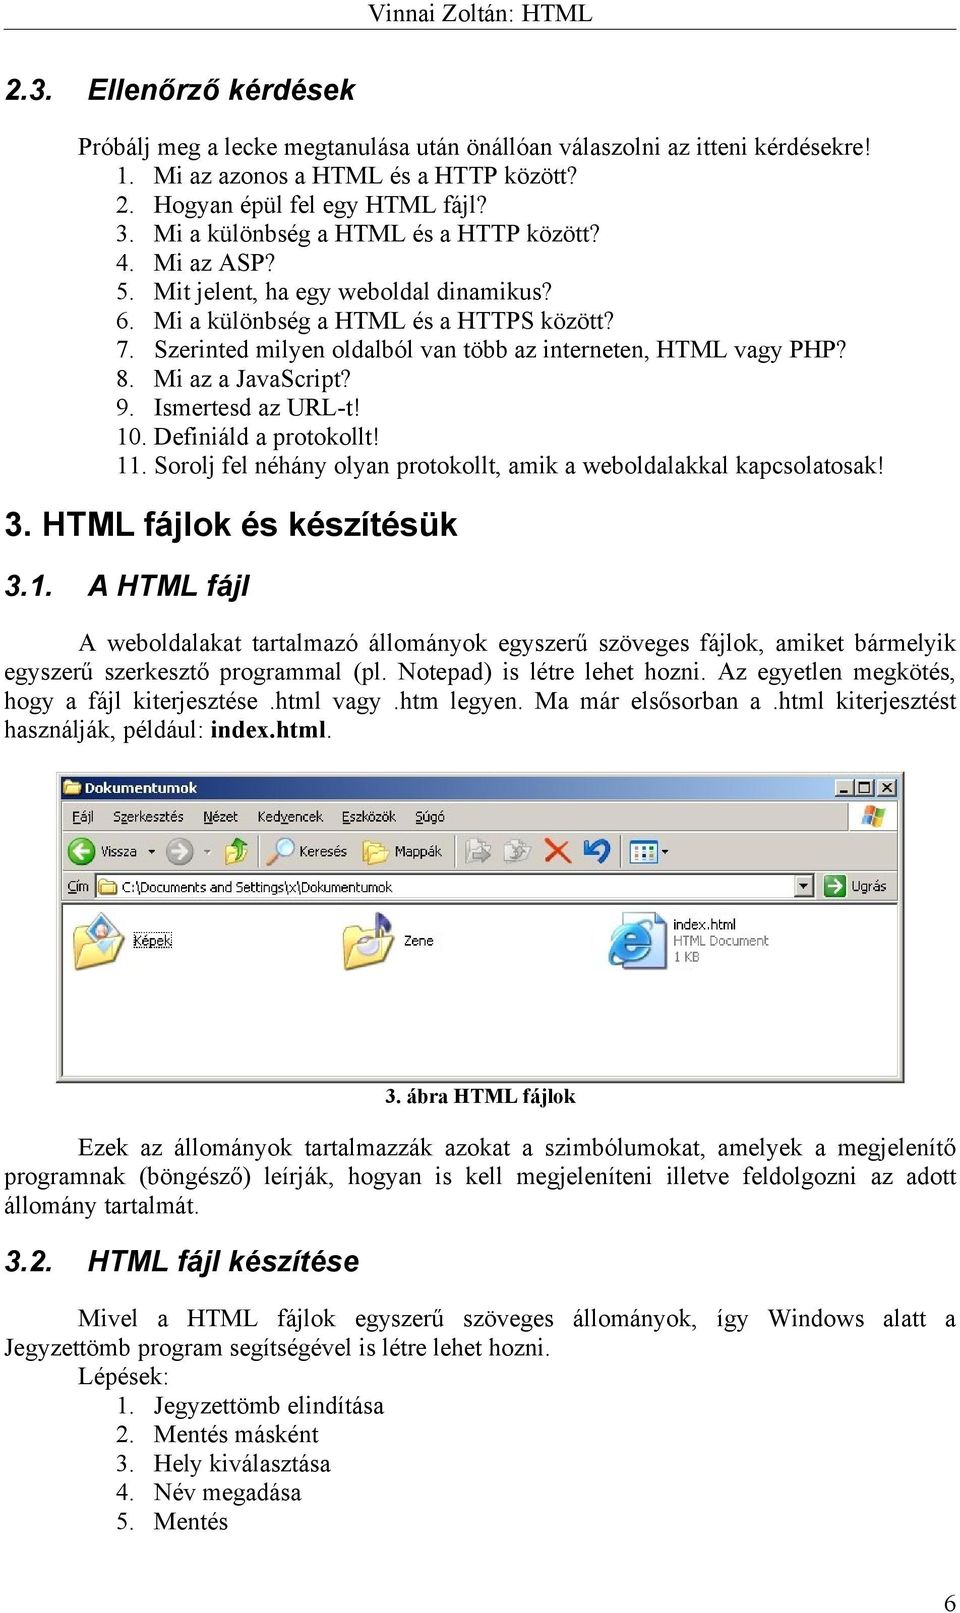 Vinnai Zoltán: HTML. Tartalomjegyzék - PDF Ingyenes letöltés